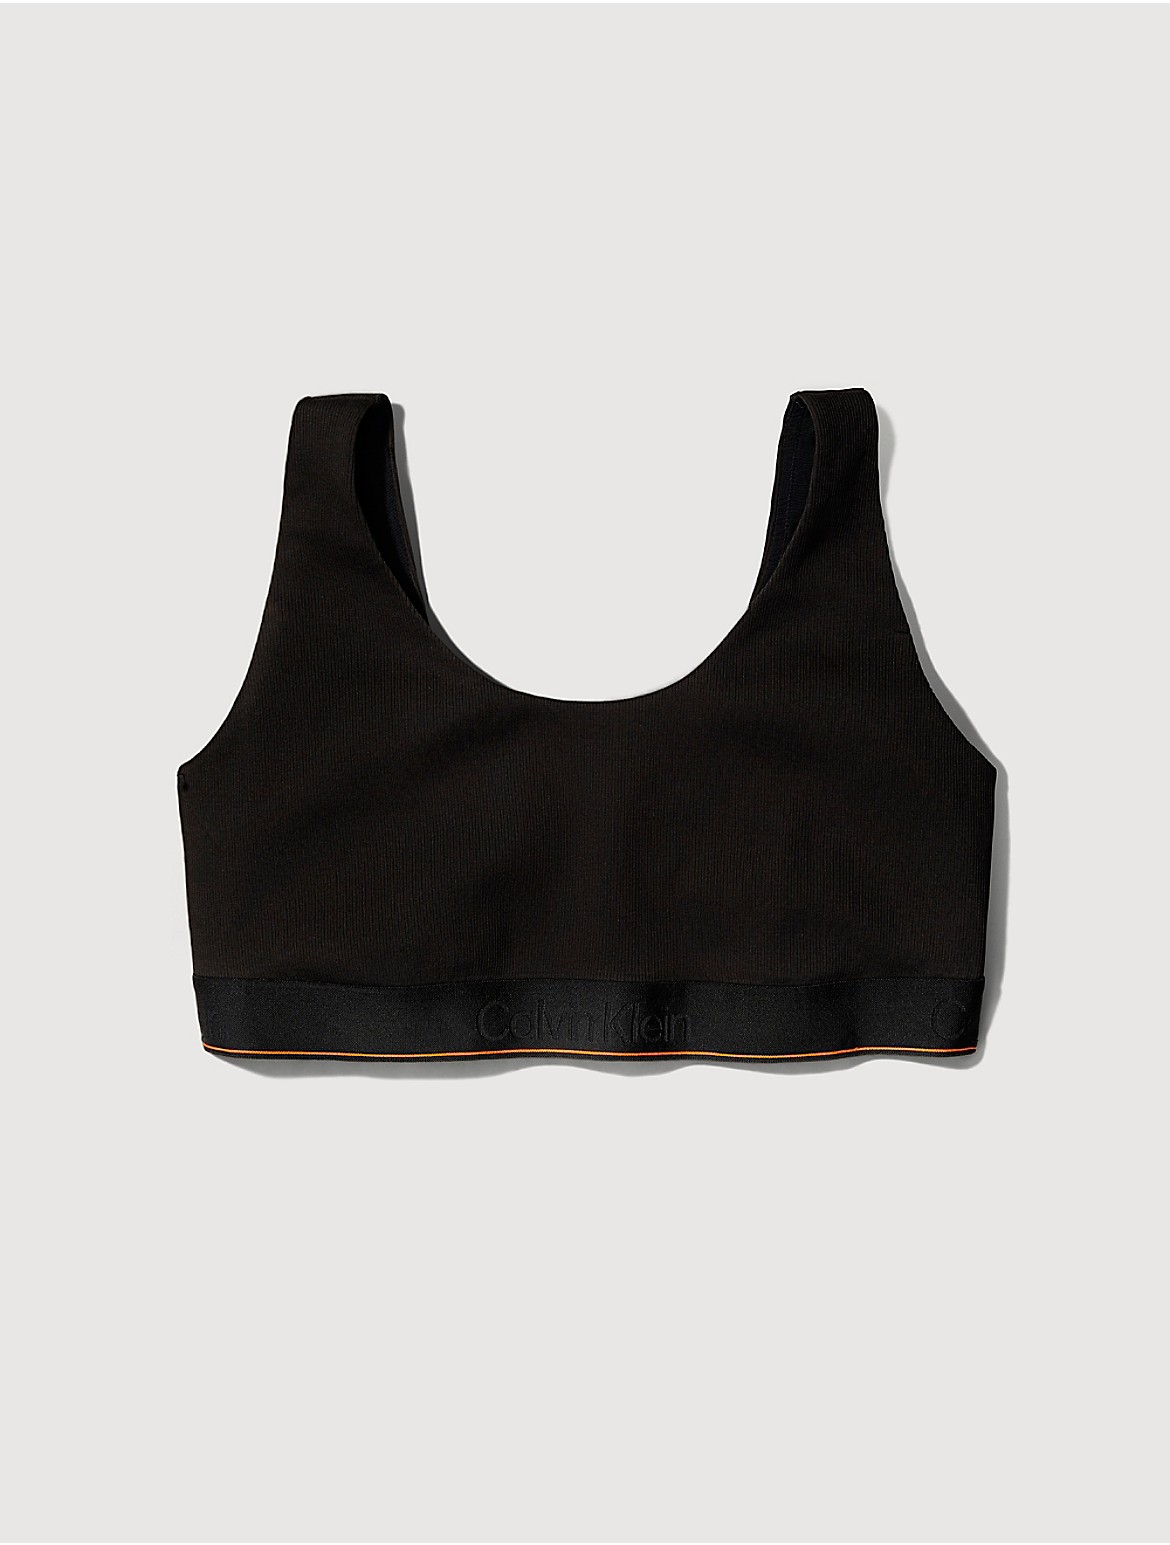 Calvin Klein Men's Plus Size Organic Cotton Stretch U-Back Bralette - Black - 2X